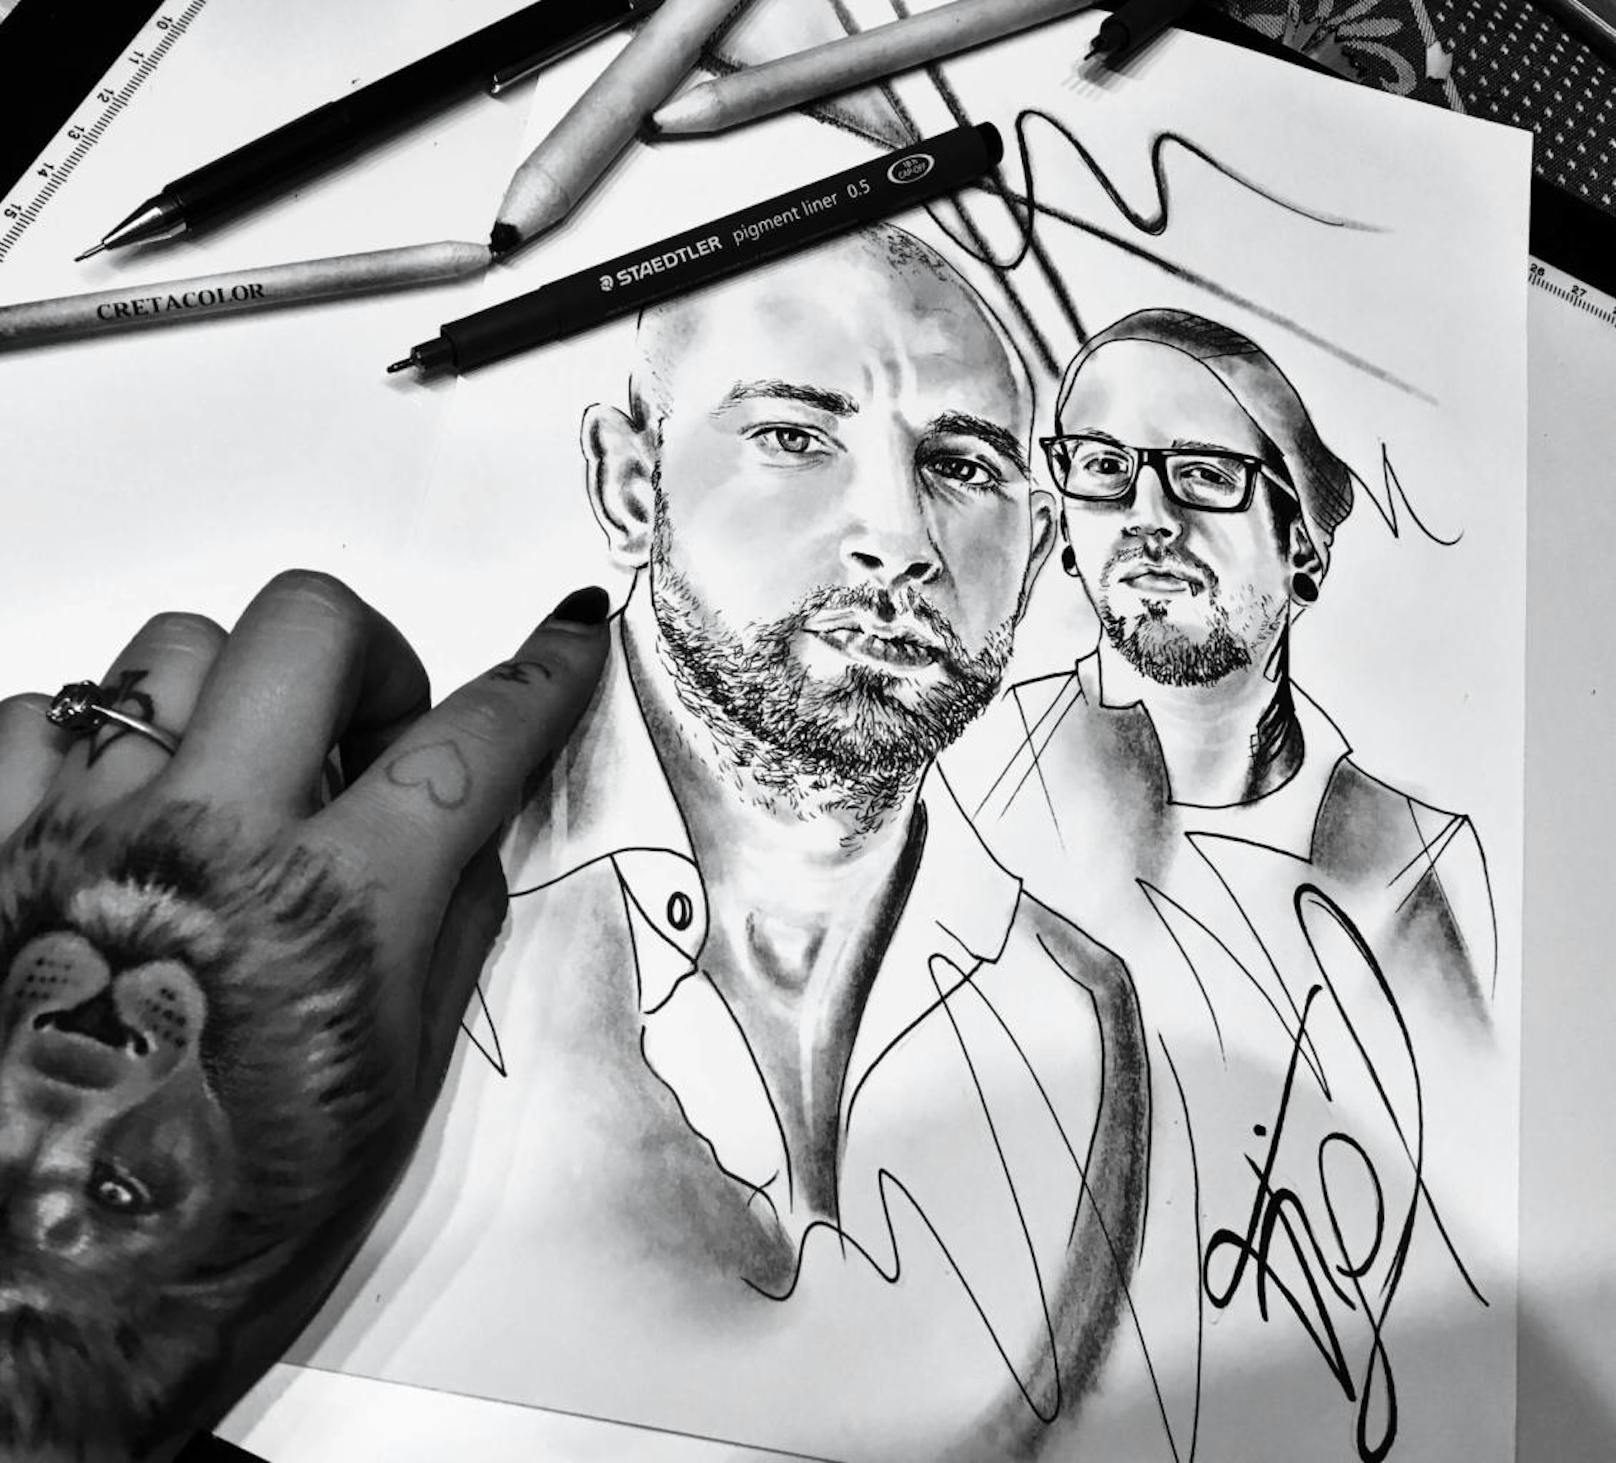 "Seiler und Speer- Portrait" von Maggy.
Instagram: maggy_art.n.ink